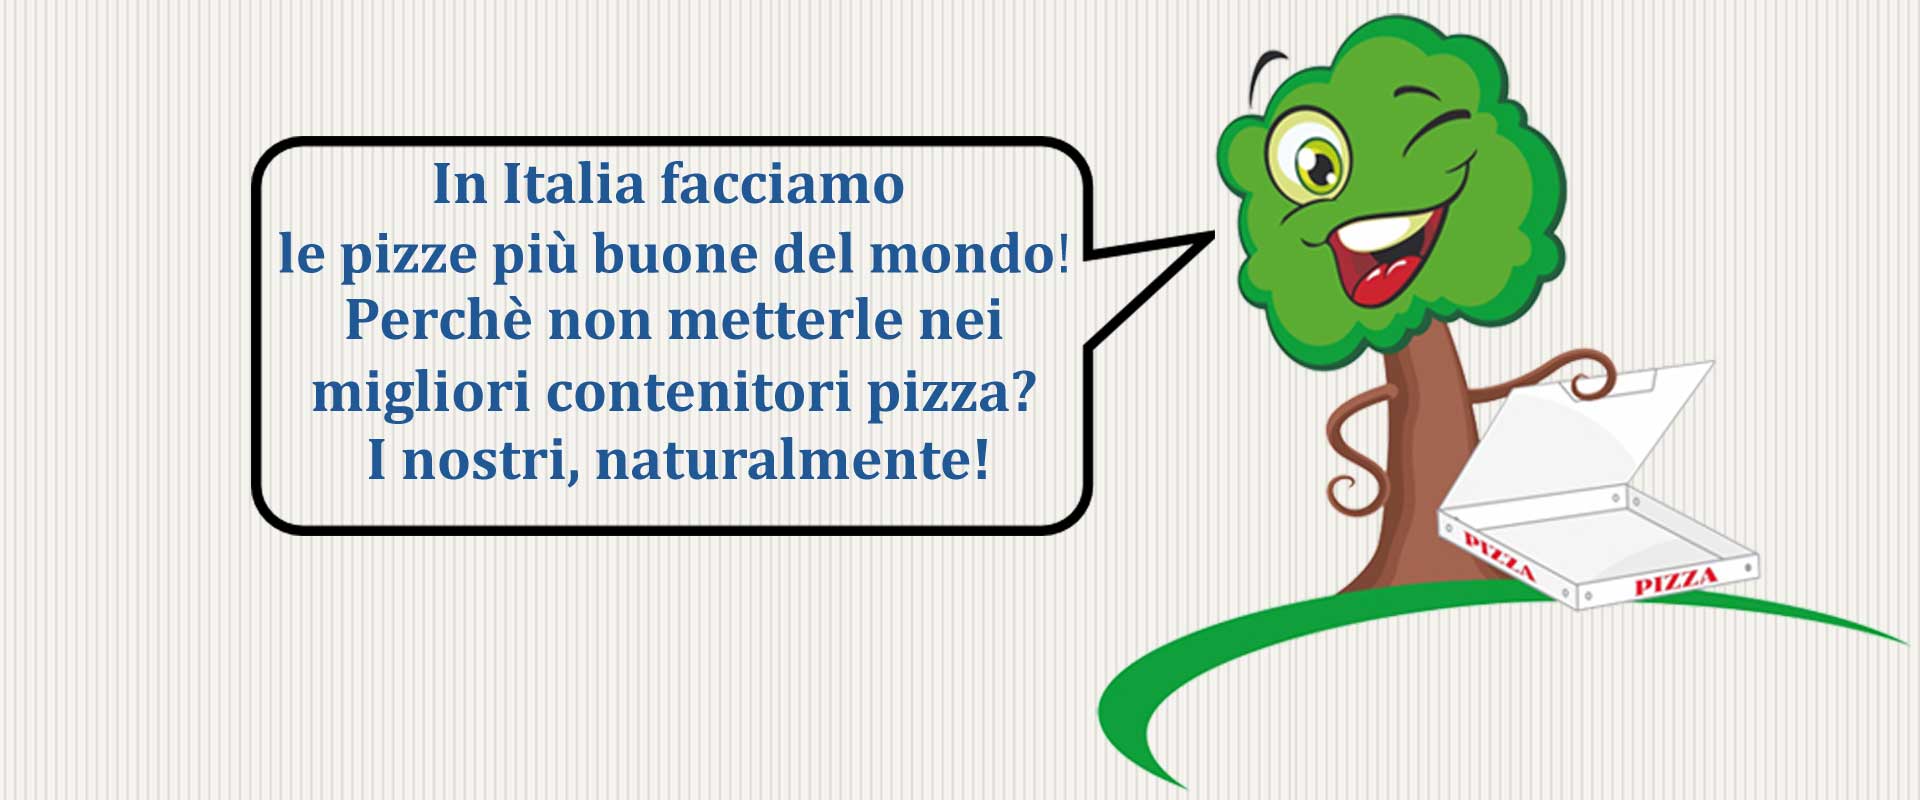 Martì il nostro simpatico testimone ci ricorda che: in Italia facciamo le pizze più buone del mondo! Perché non metterle nelle migliori scatole pizza? Le nostre naturalmente!